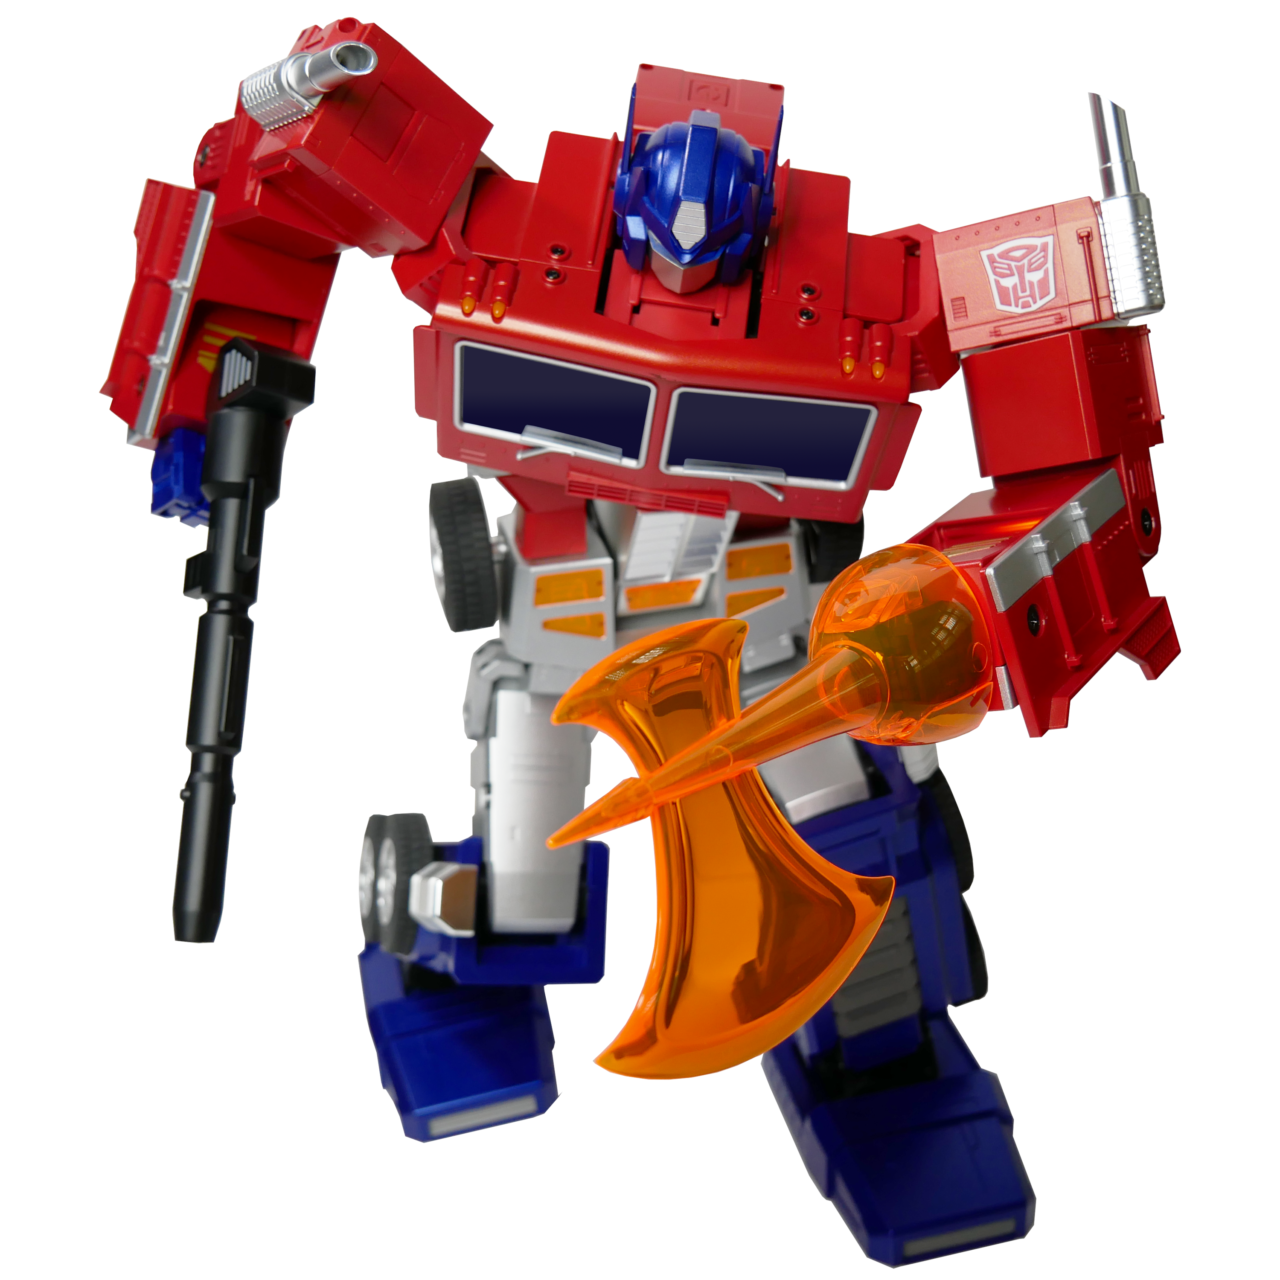 Elite Optimus Prime product image (Robosen Robotics)